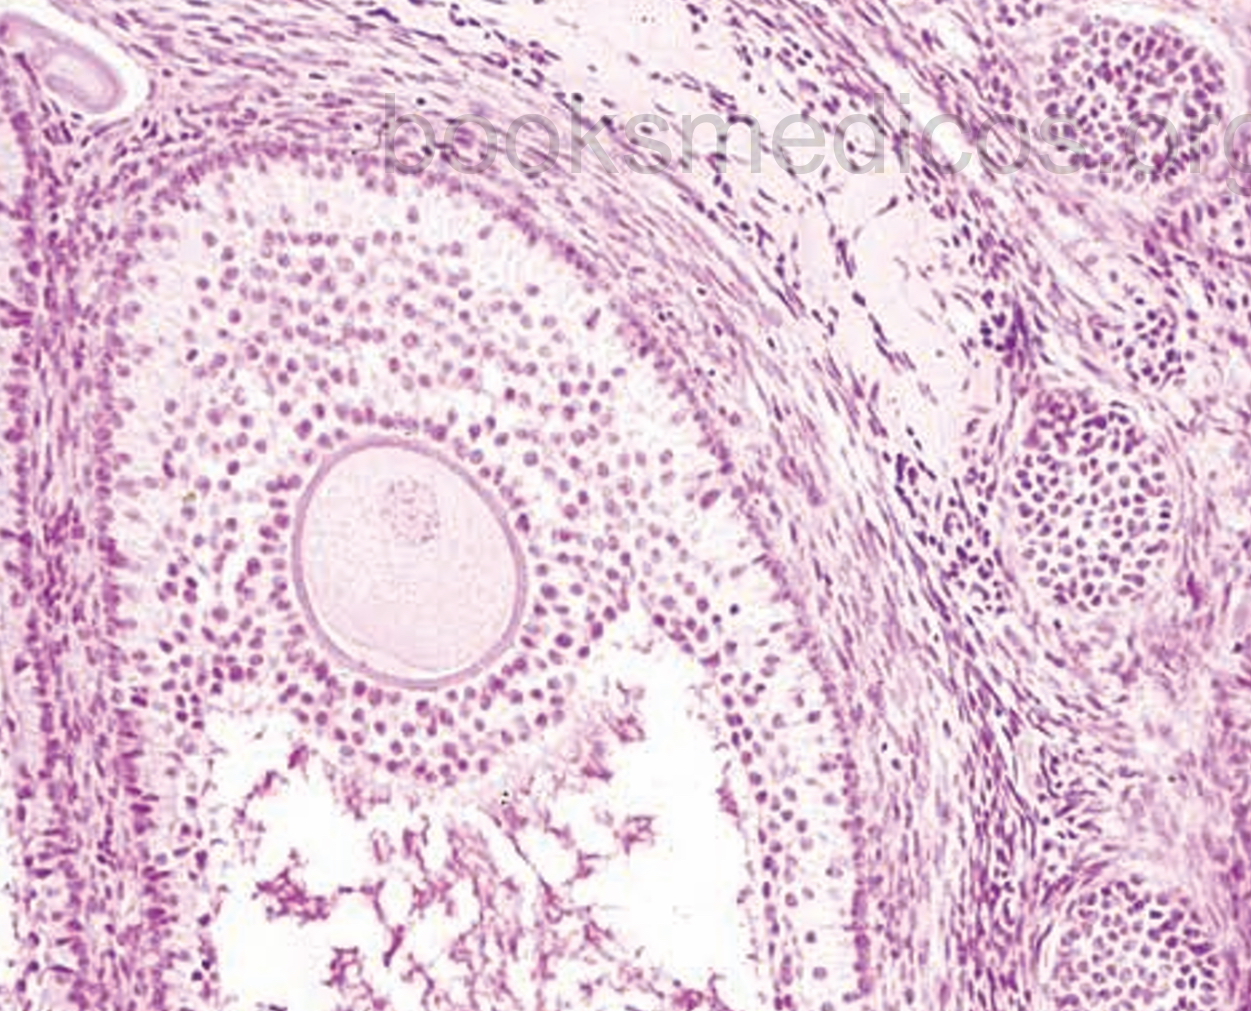 Aspecto microscópio del ovario 